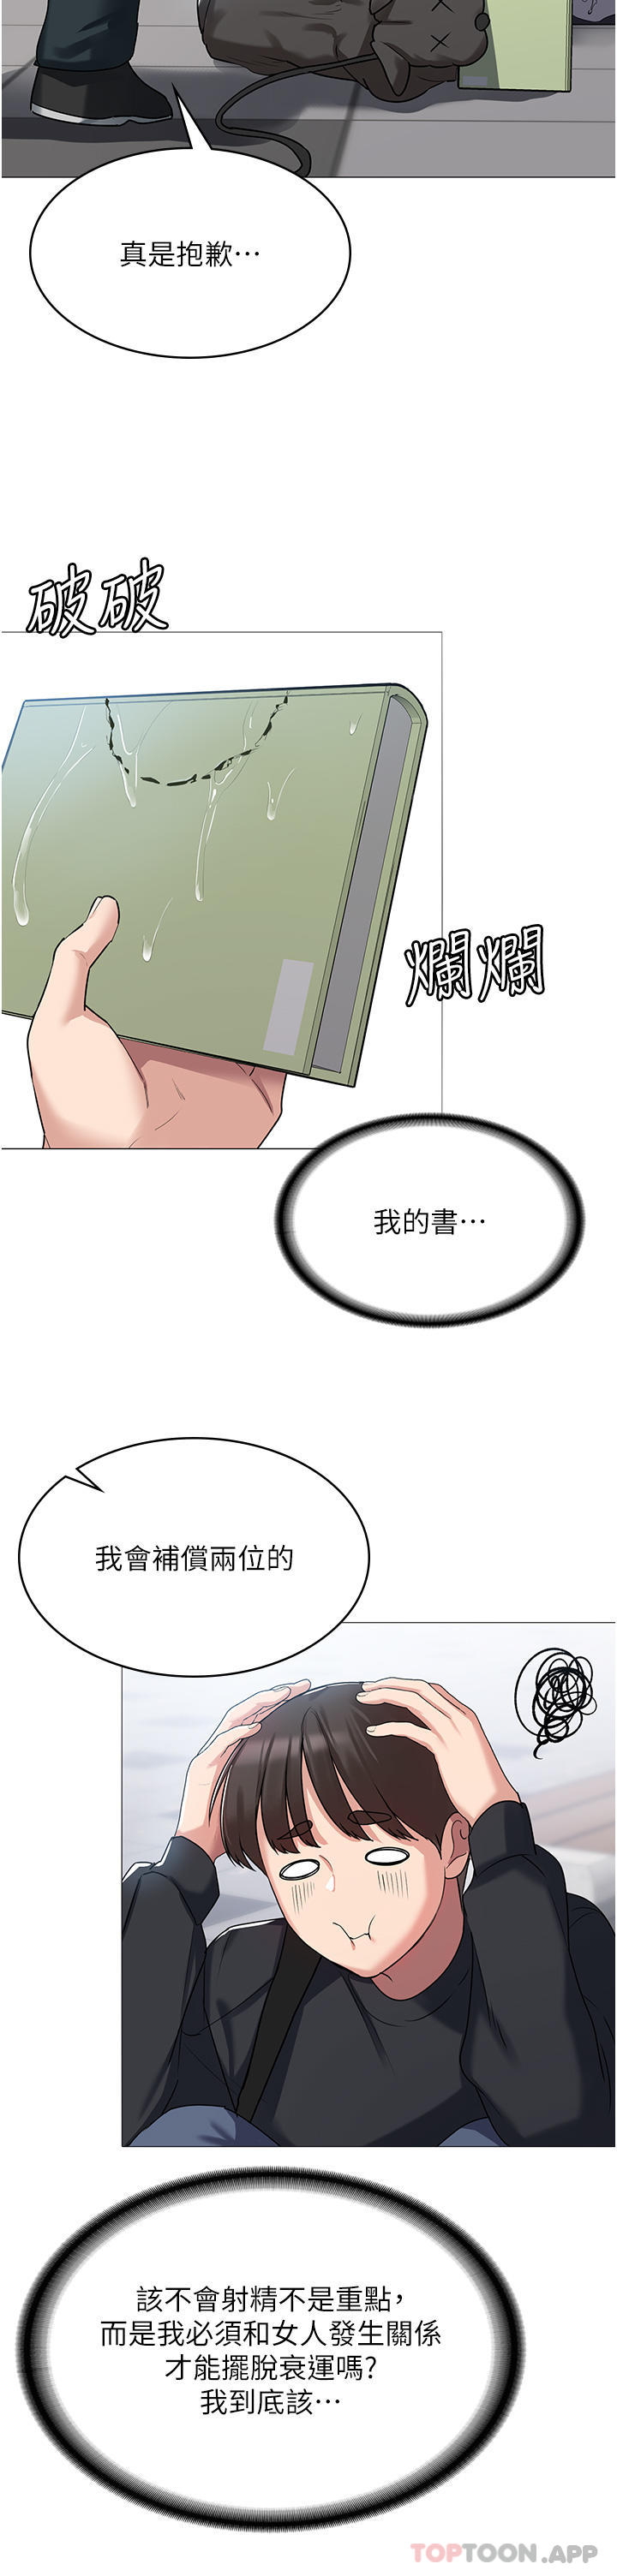 韩国污漫画 消災解餓 第3话-霸王色阳气的力量 44